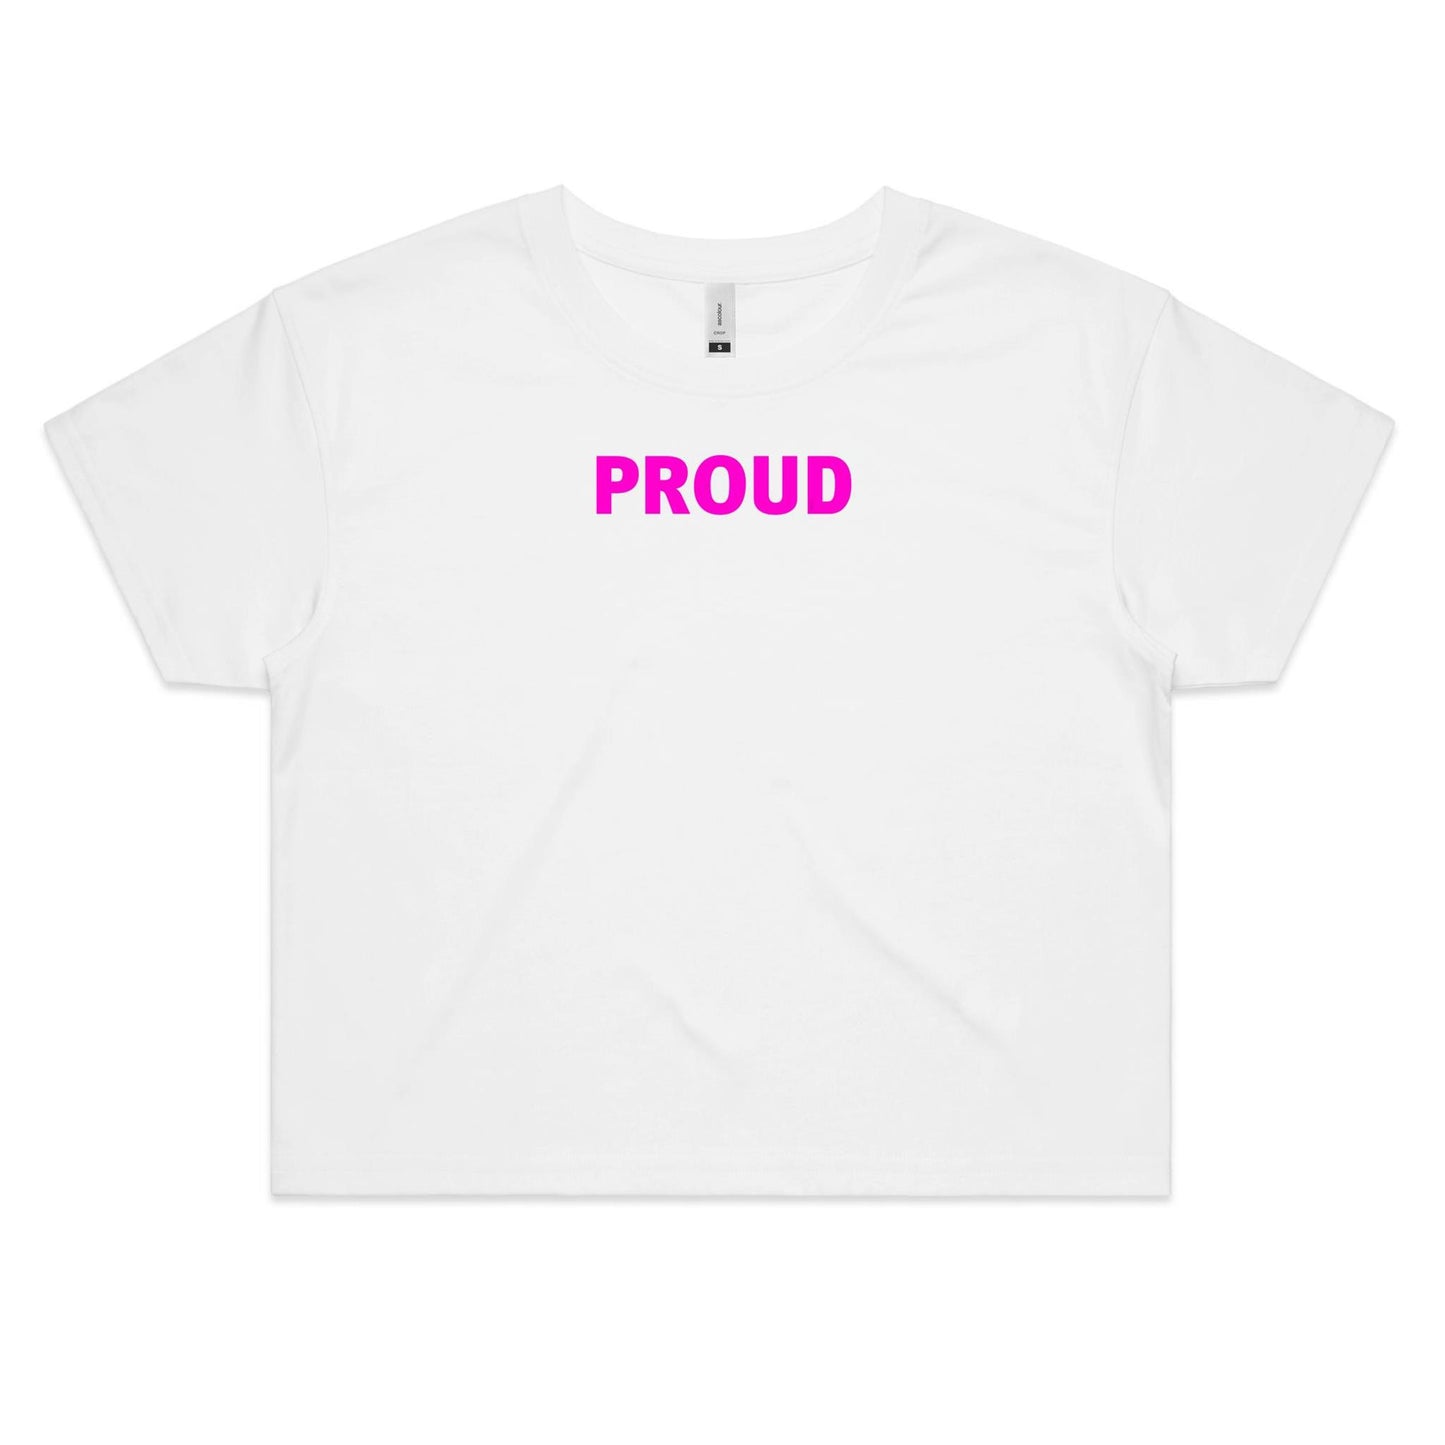 Proud Crop T Shirts for Women